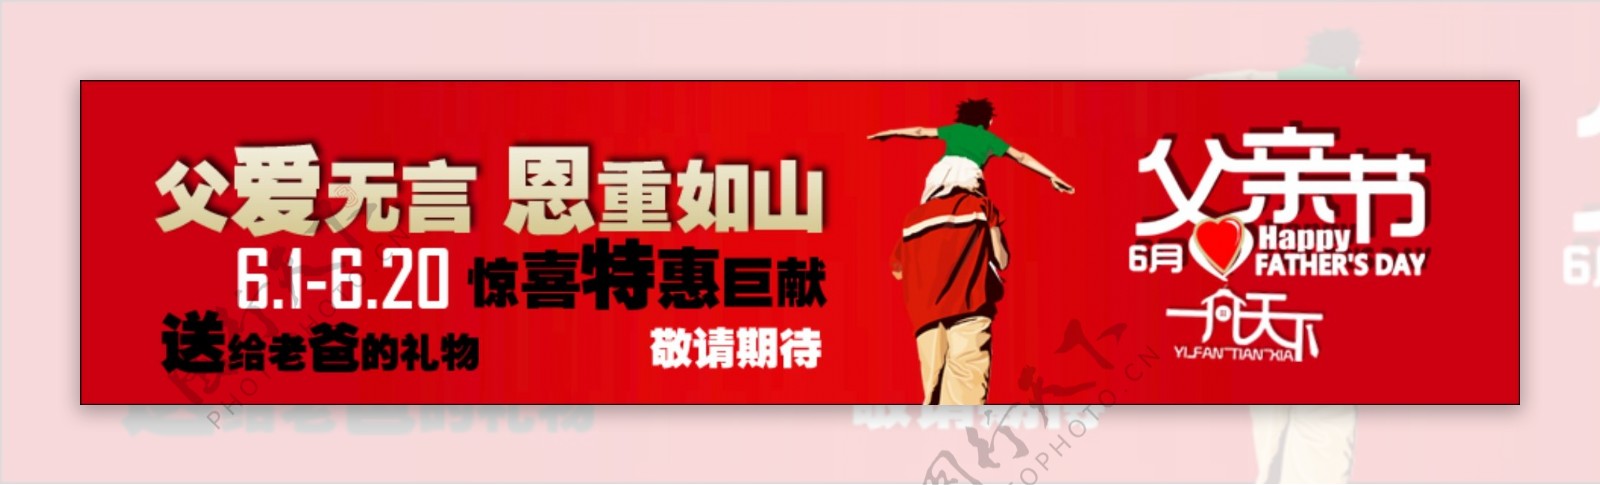 父亲节活动banner设计图片